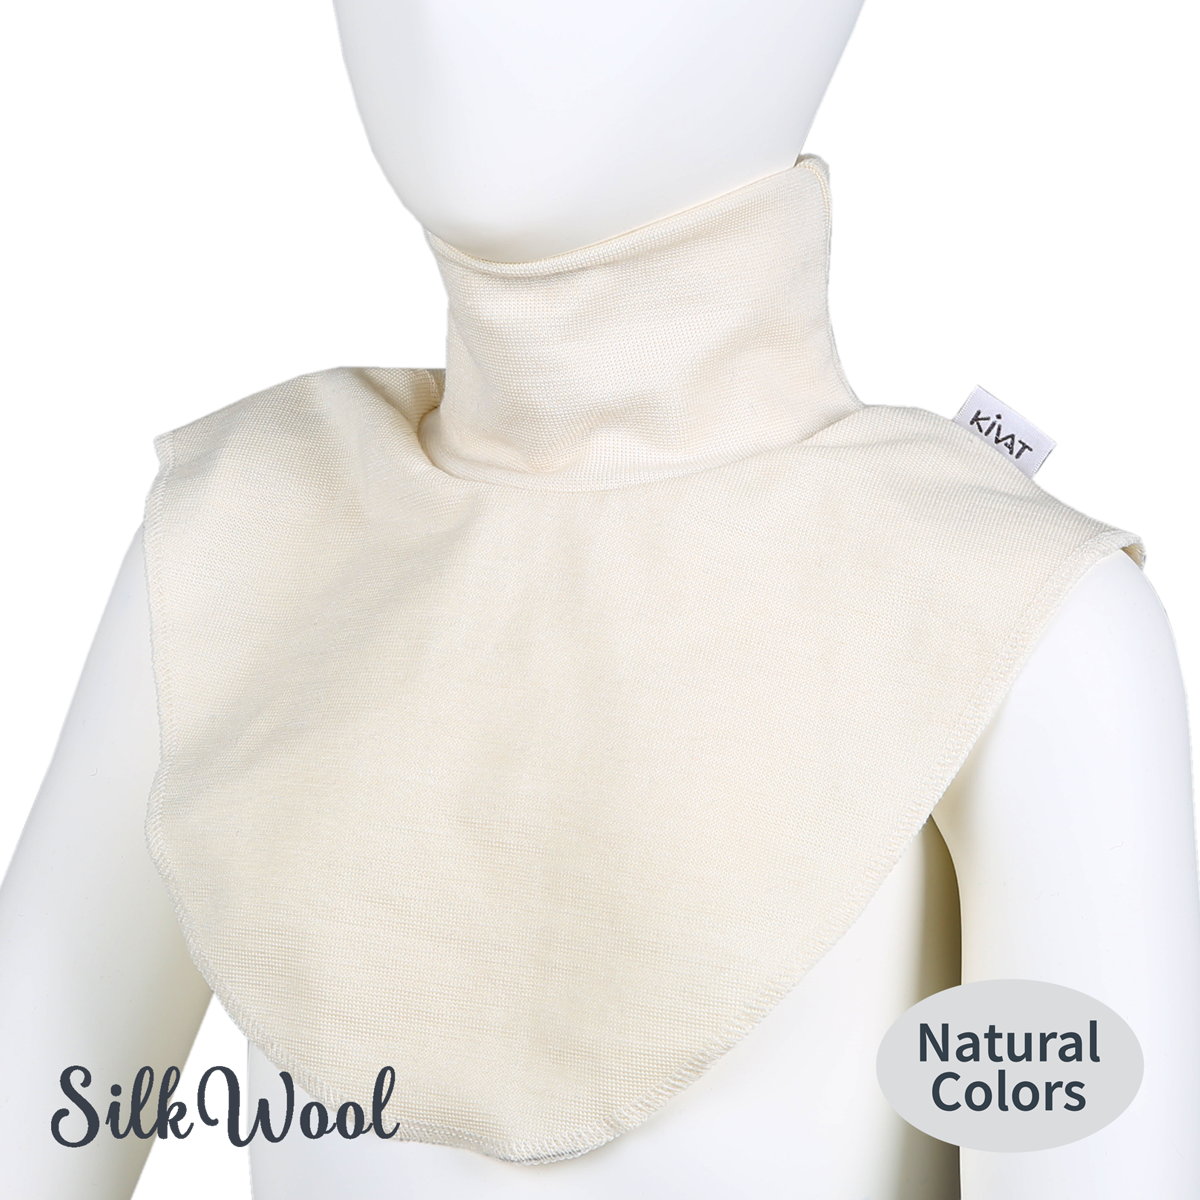 Silkwool turtleneck collar